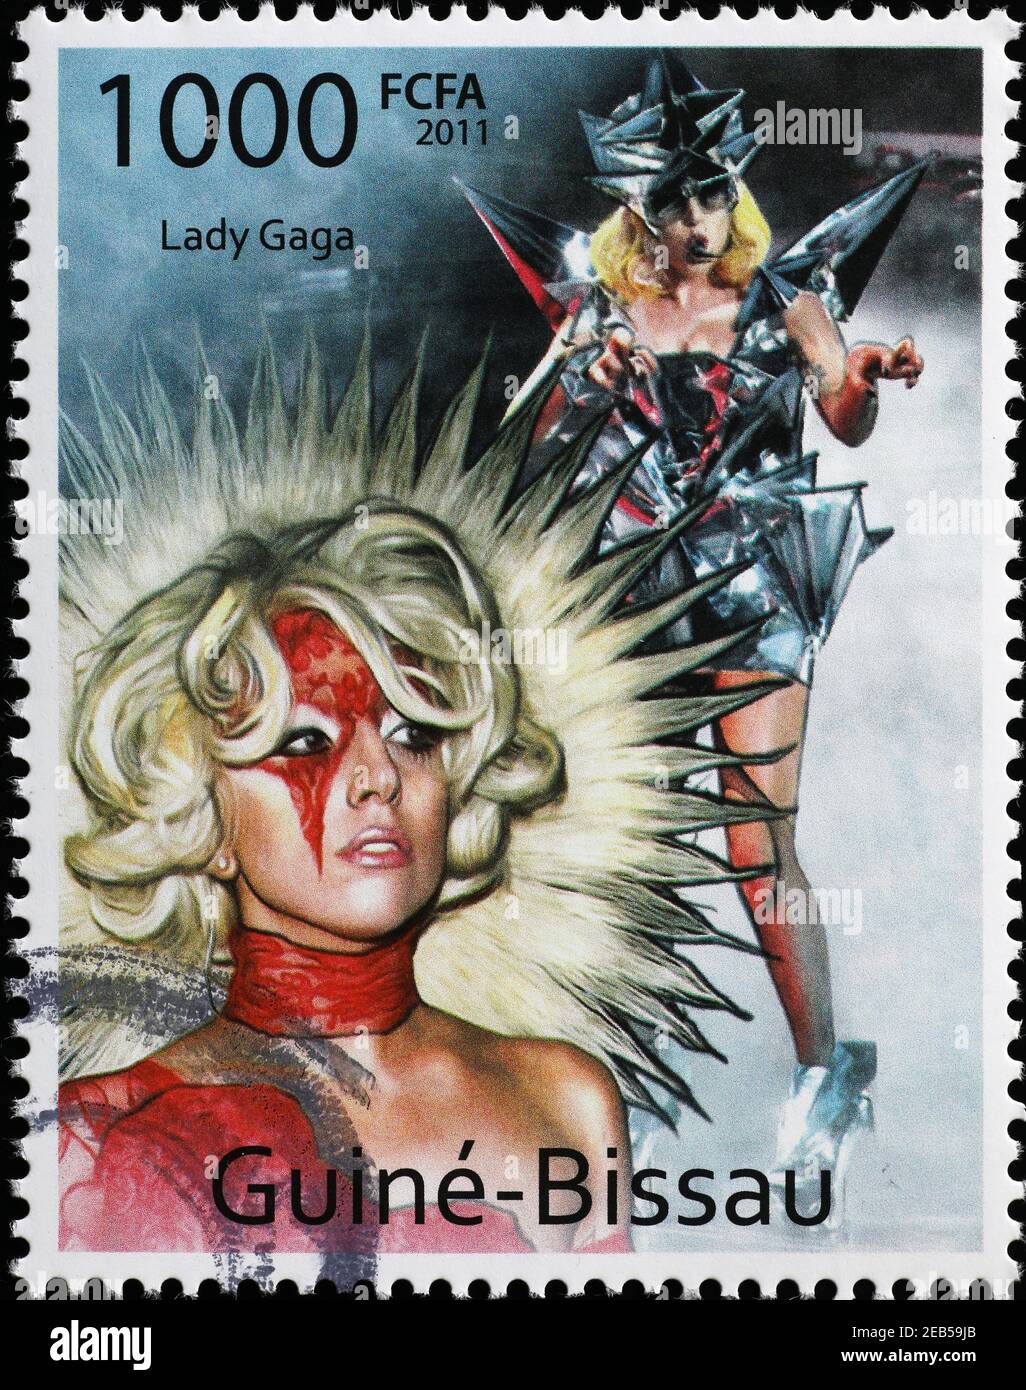 Porträts von Lady Gaga auf Briefmarke Stockfoto